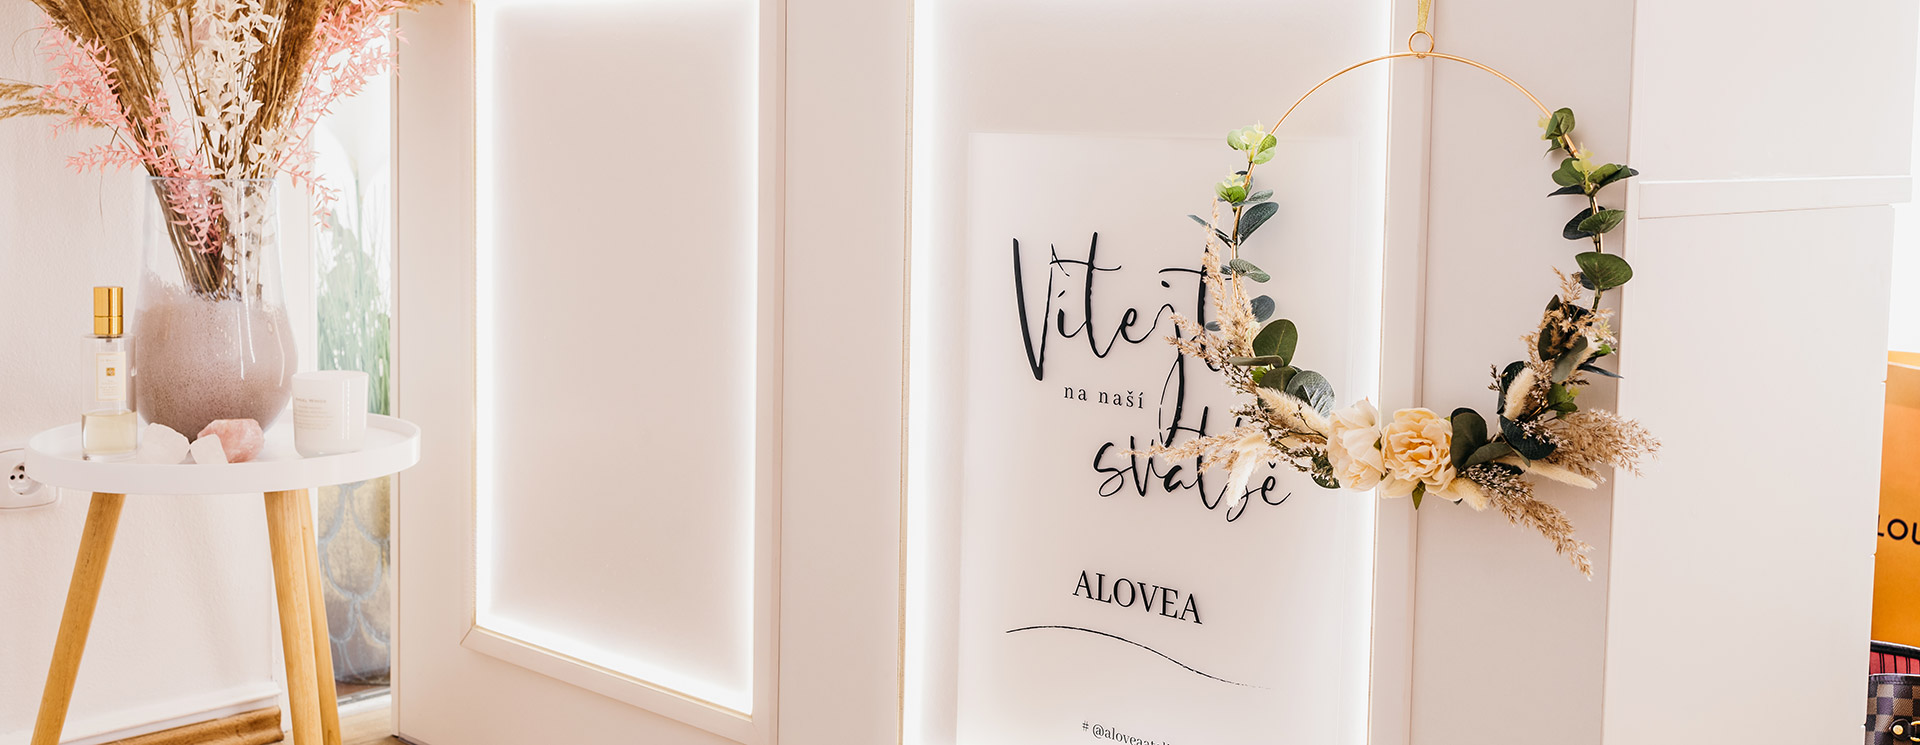 Svatební ateliér AloveA